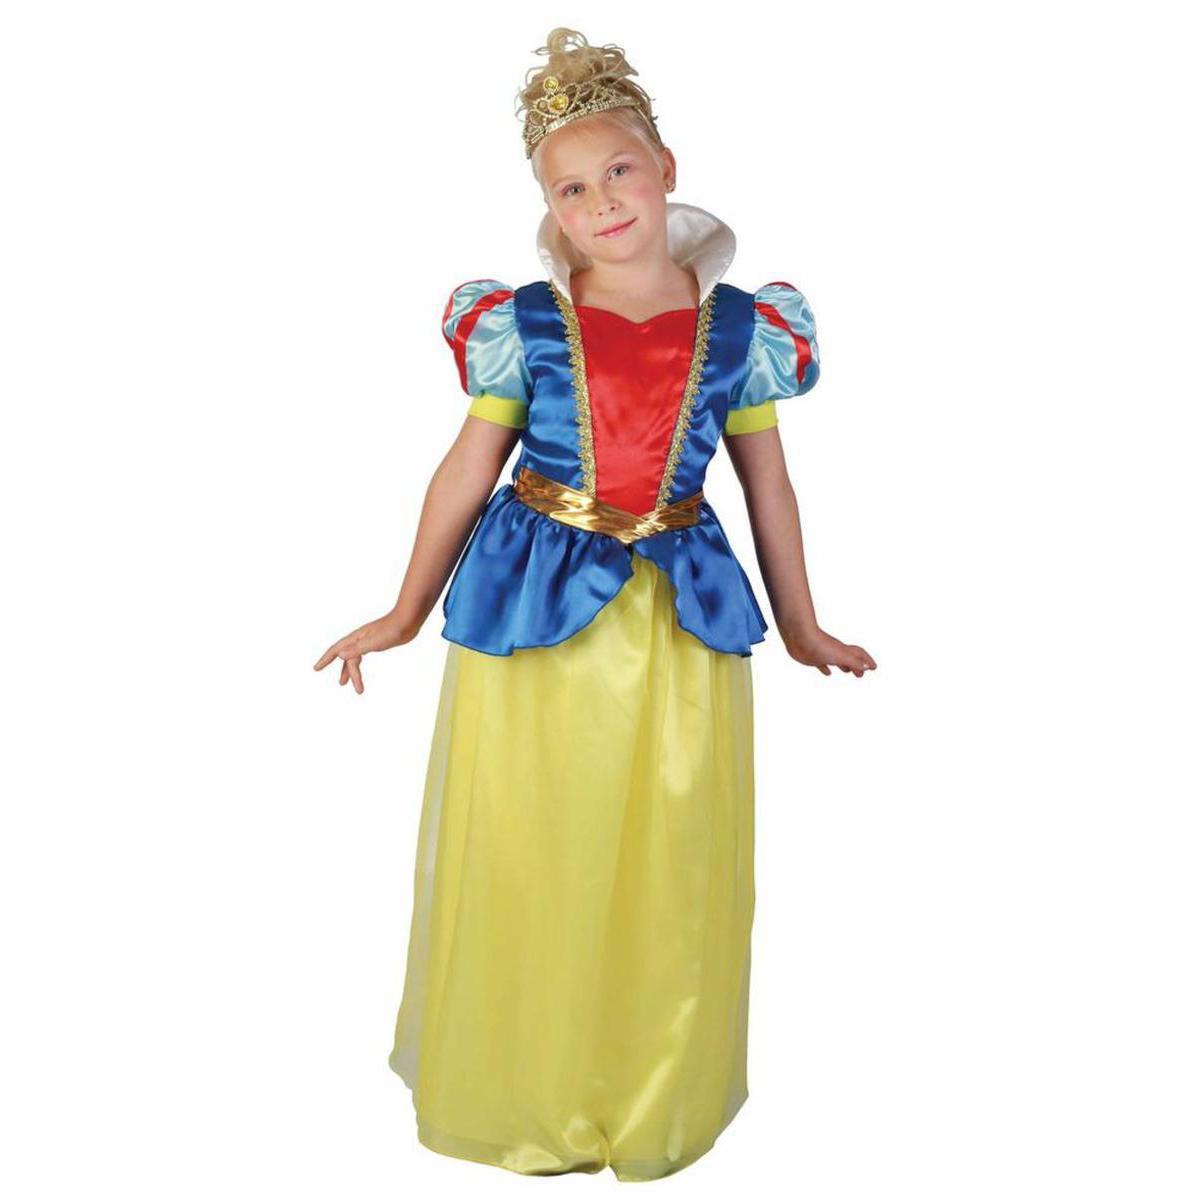 Costume enfant princesse en polyester - M - Jaune, bleu